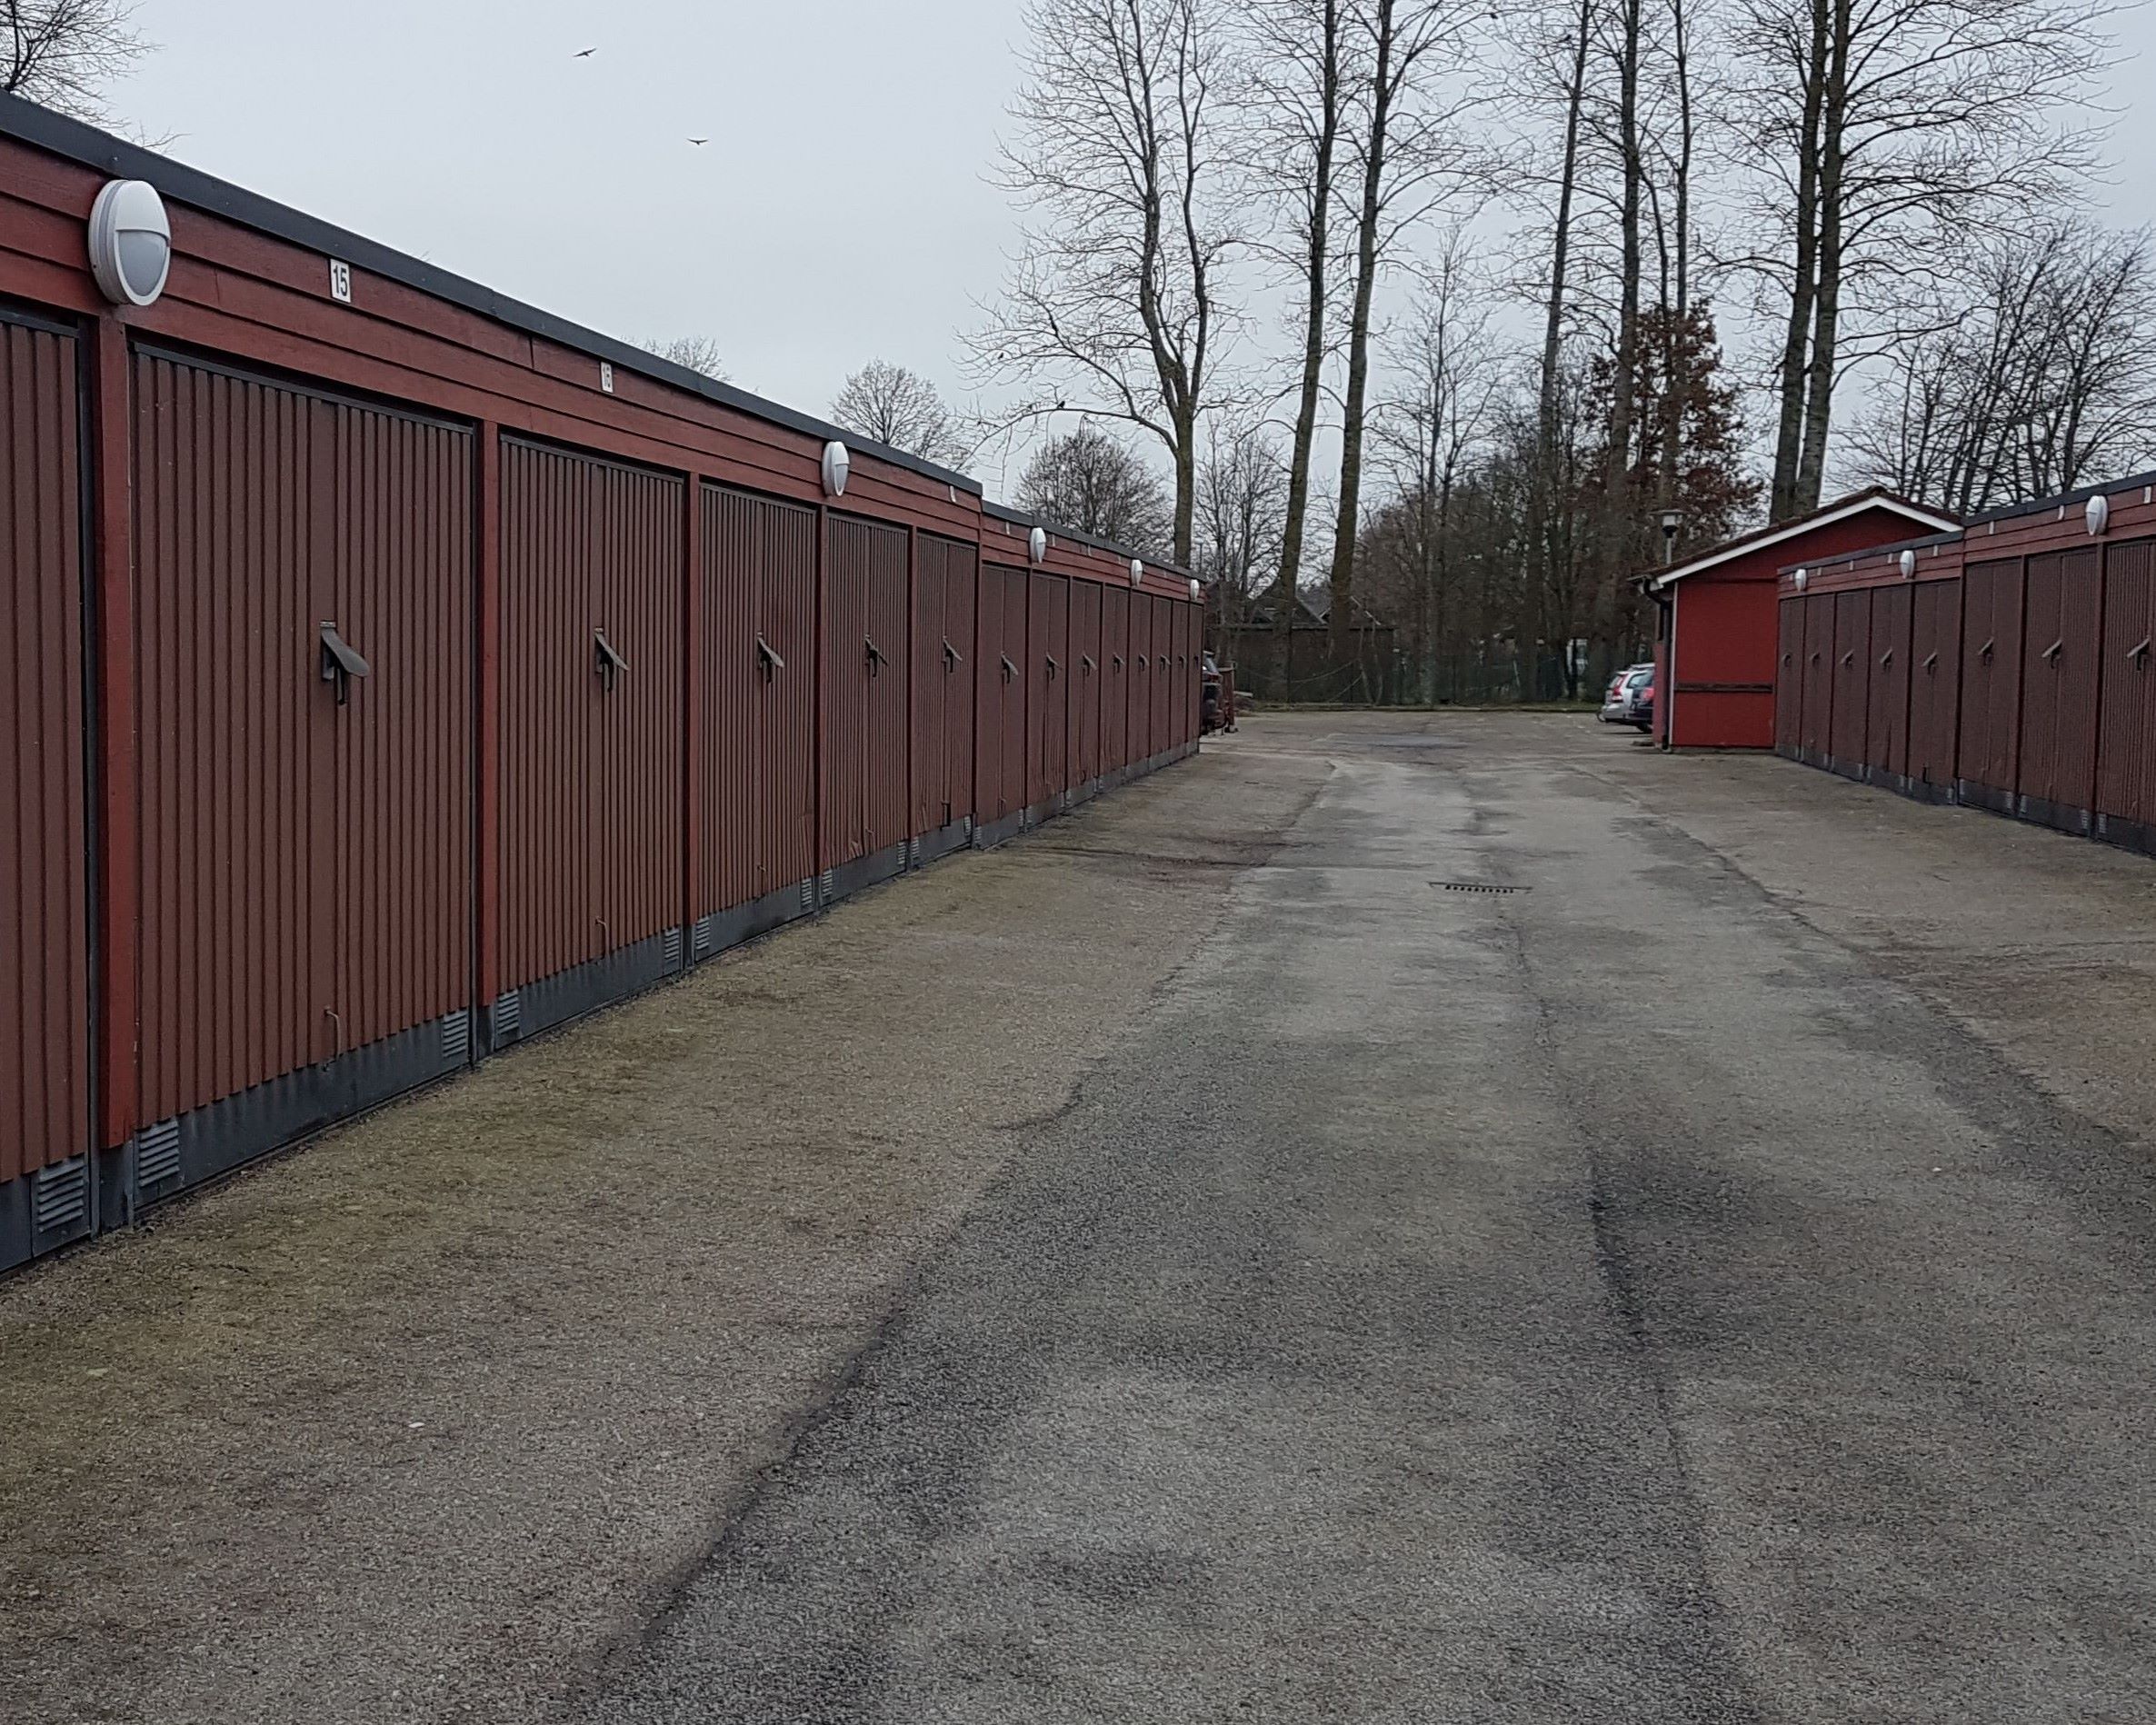 Röda garagelängor med brundröda portar som står mittemott varandra. Asfalterad väd mellan och träd längst bort vid vändzonen.